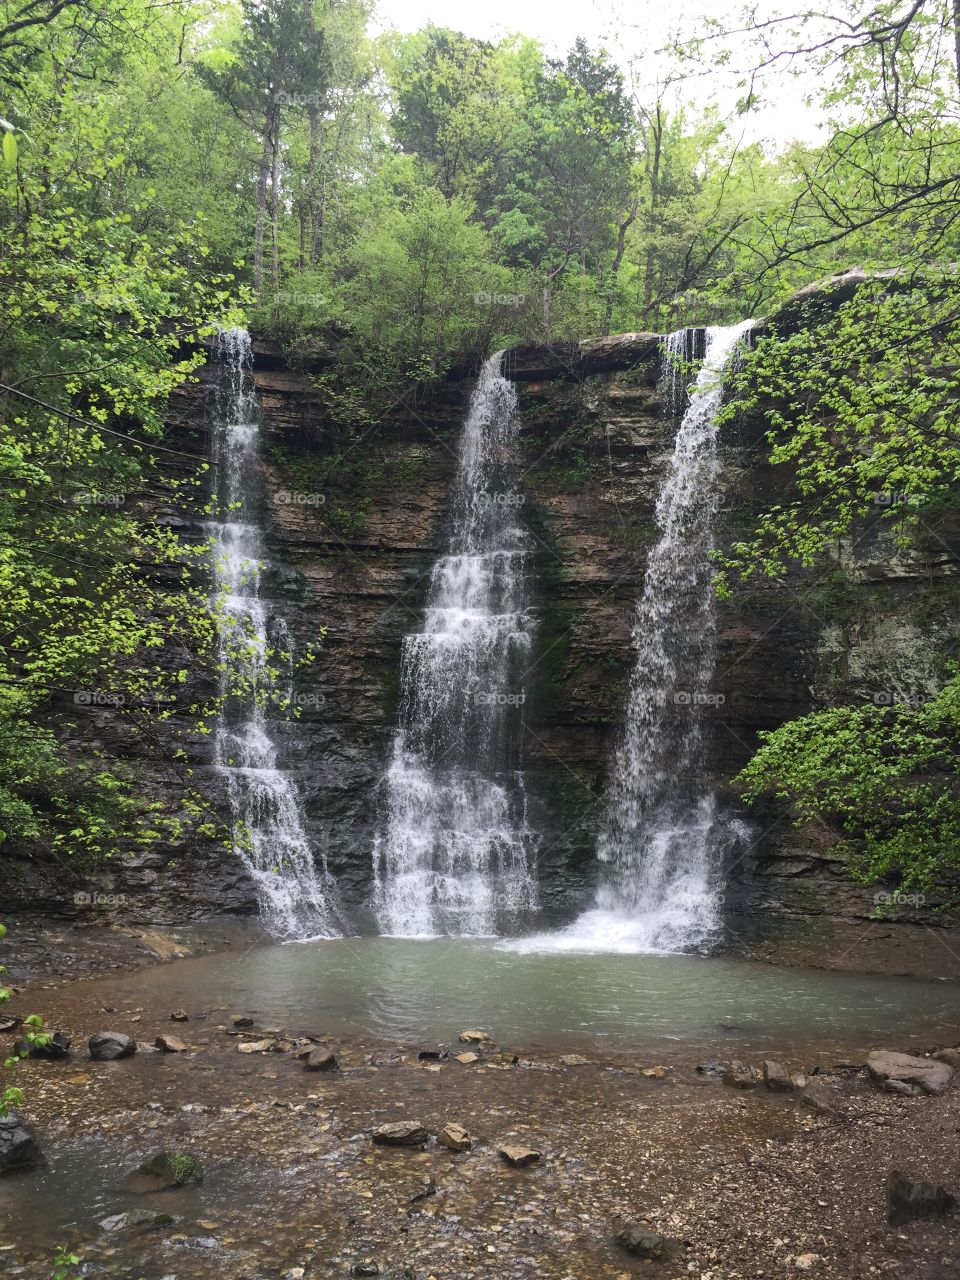 Triple waterfalls in Arkansas